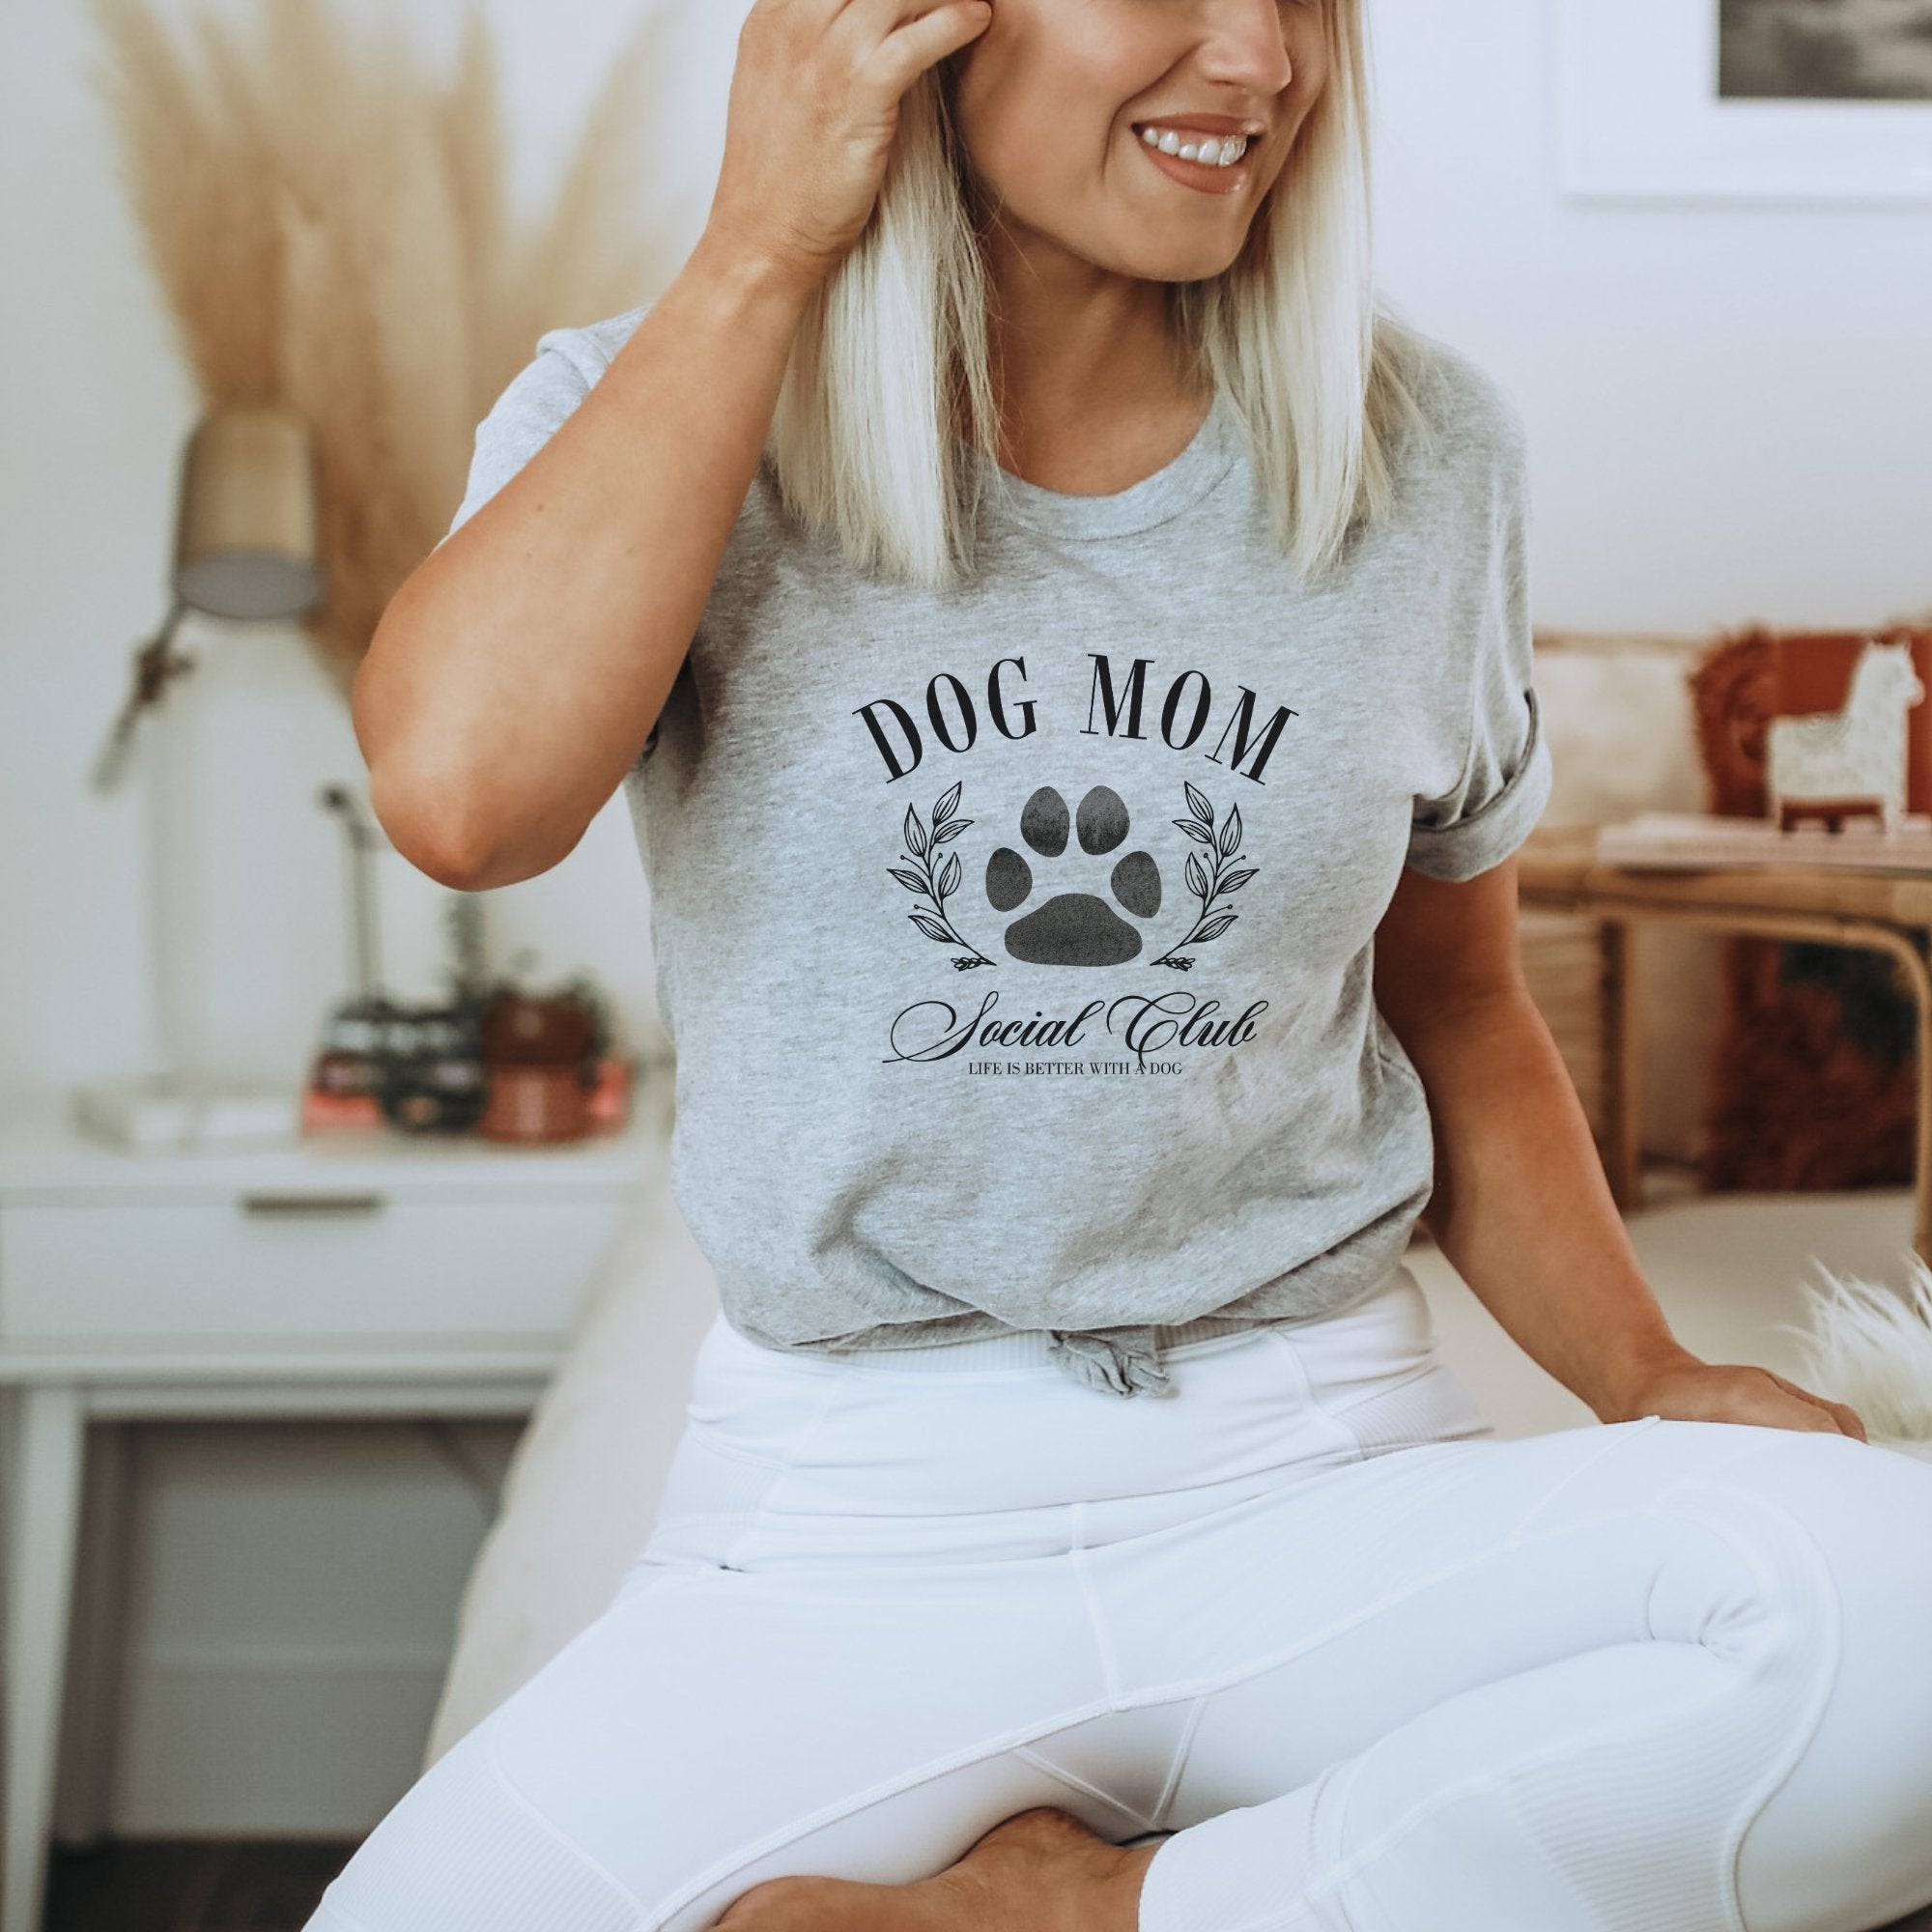 Dog Mom Social Club T-Shirt - Trendznmore